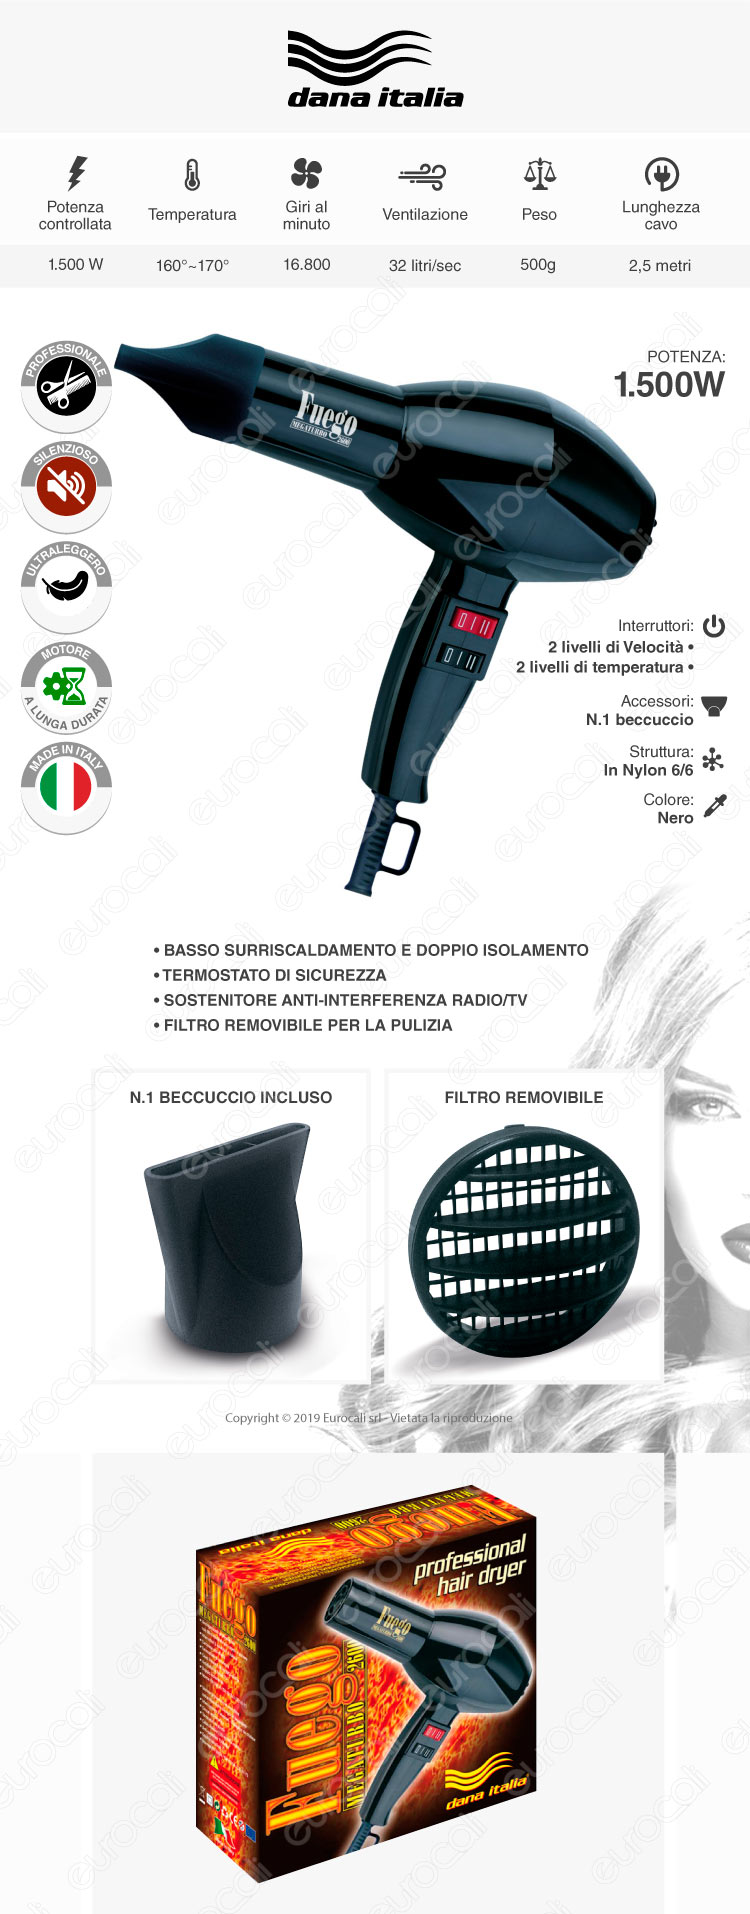 Dana Italia Fuego Megaturbo 2600 - Asciugacapelli Professionale